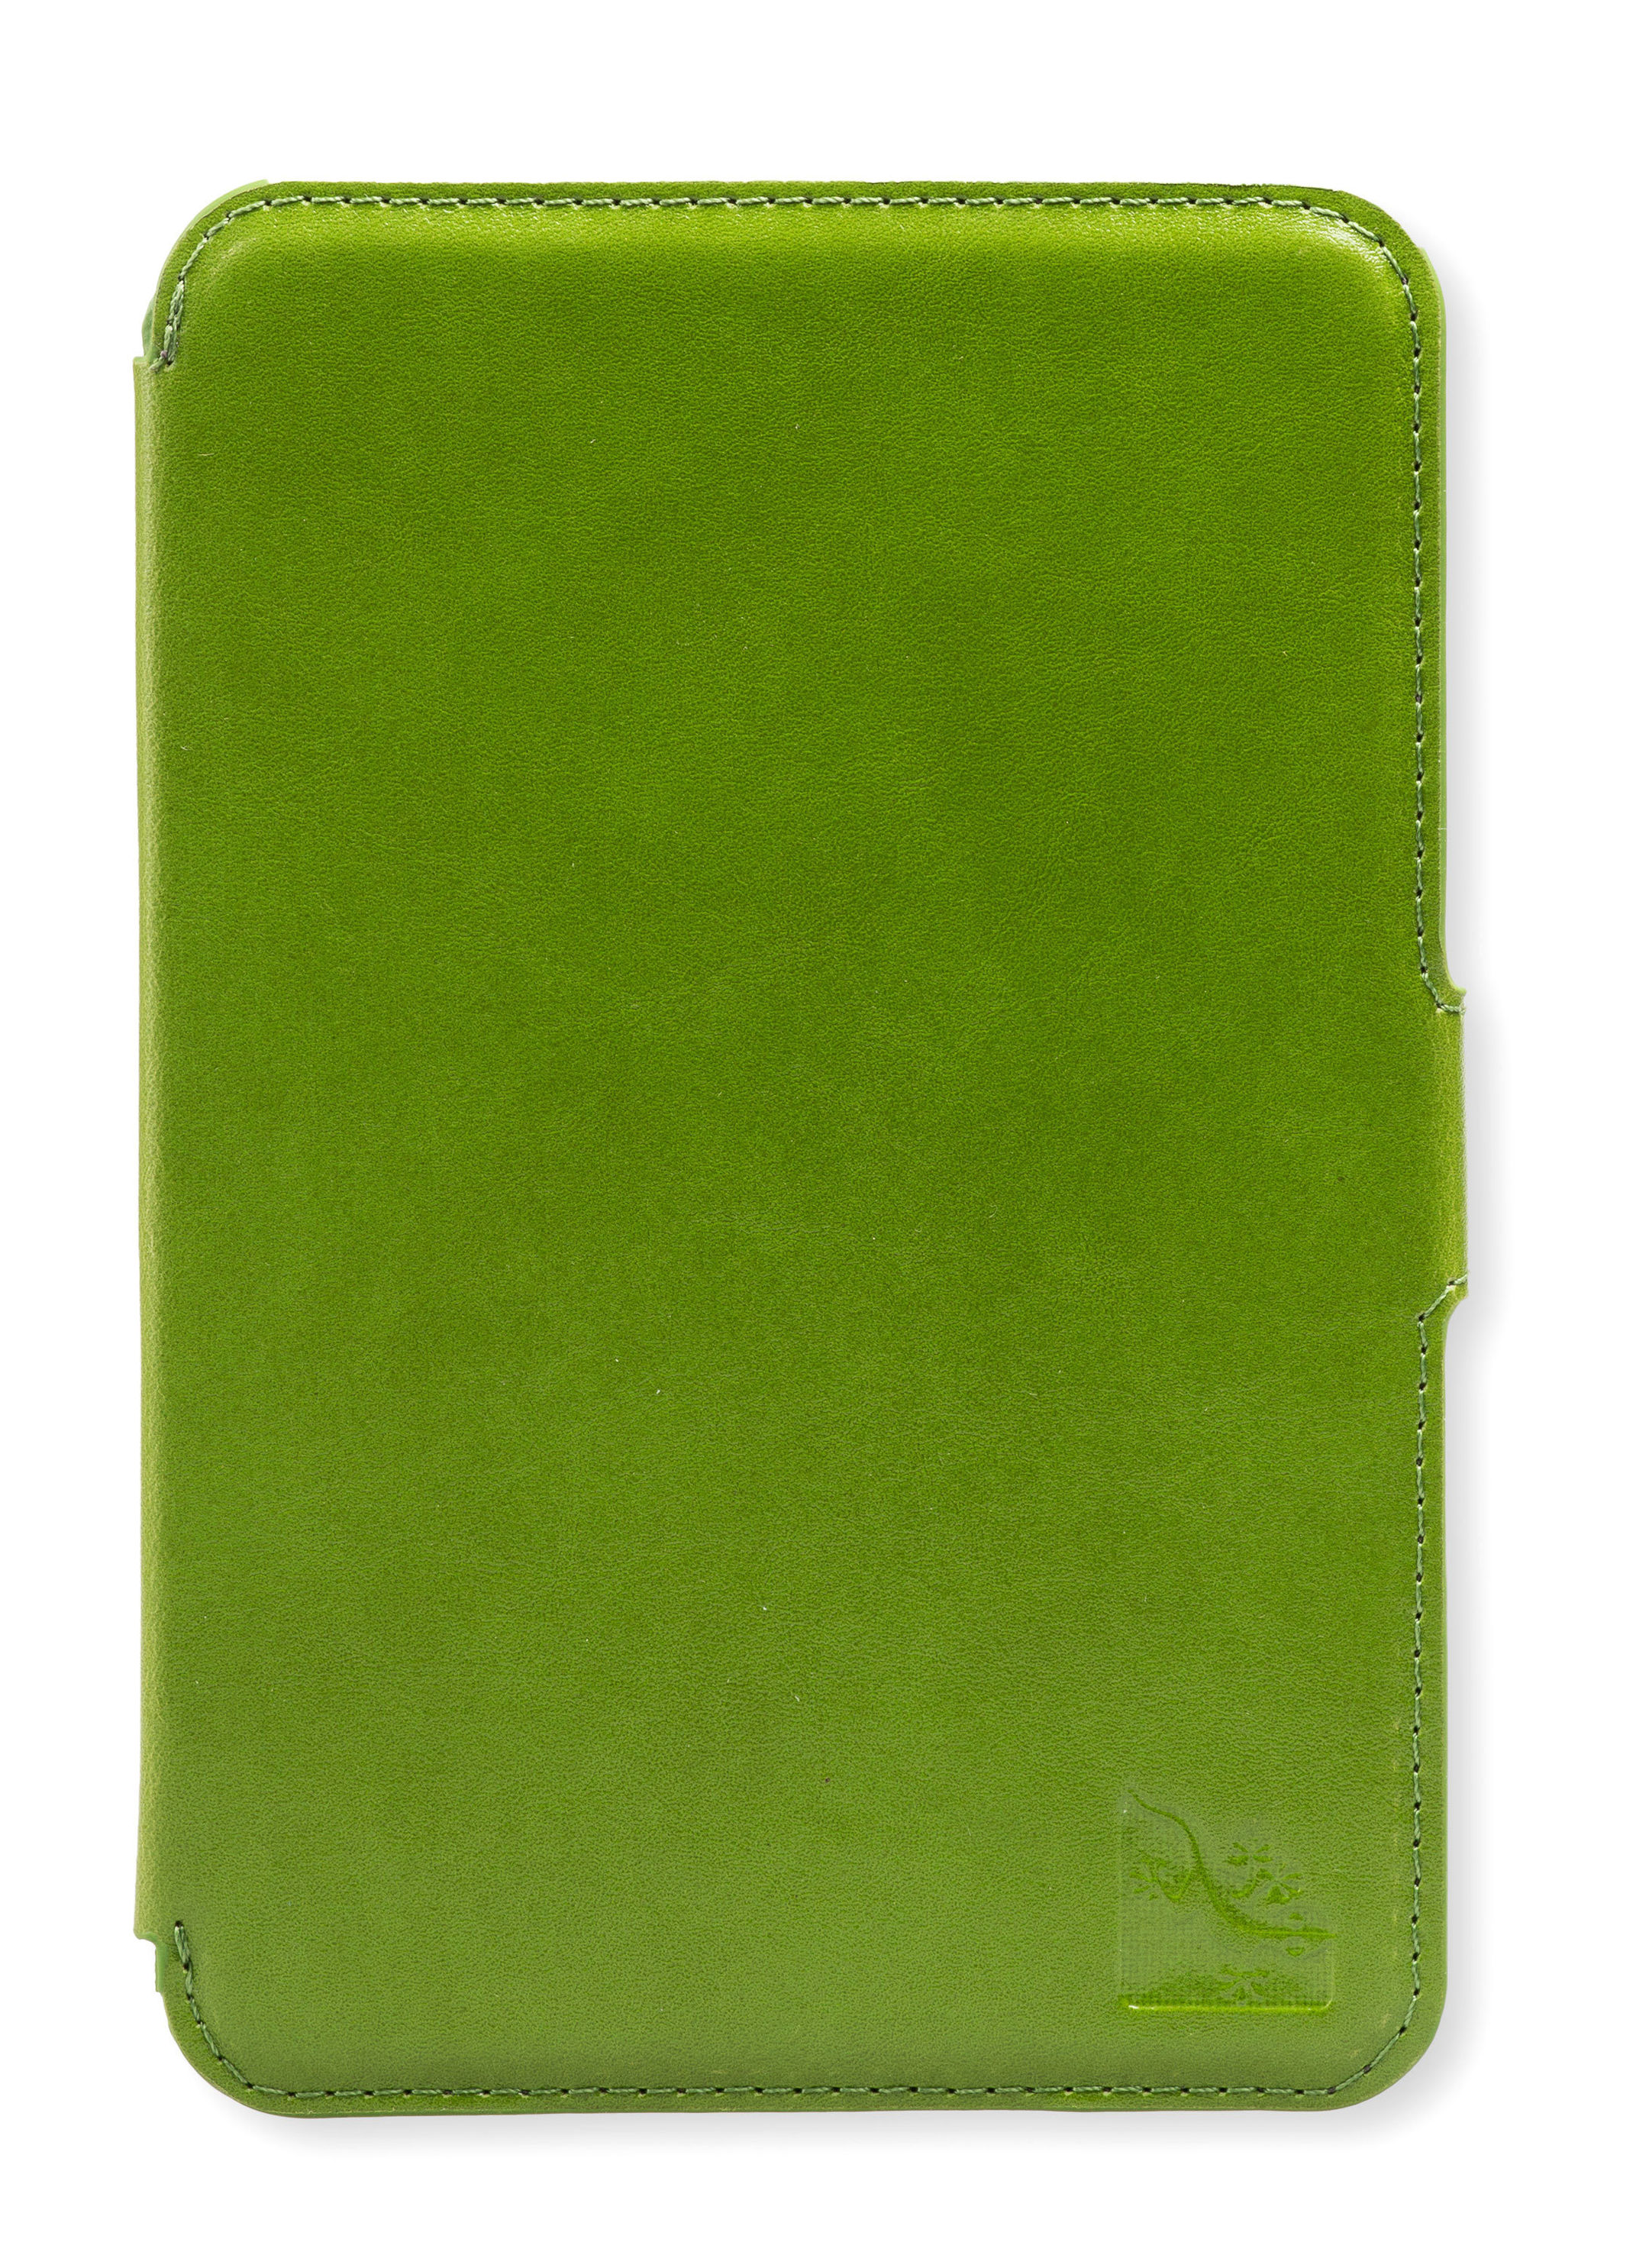 Gecko Covers Slimfit Tasche für tolino shine + page, Farbe: grün |  Weltbild.de